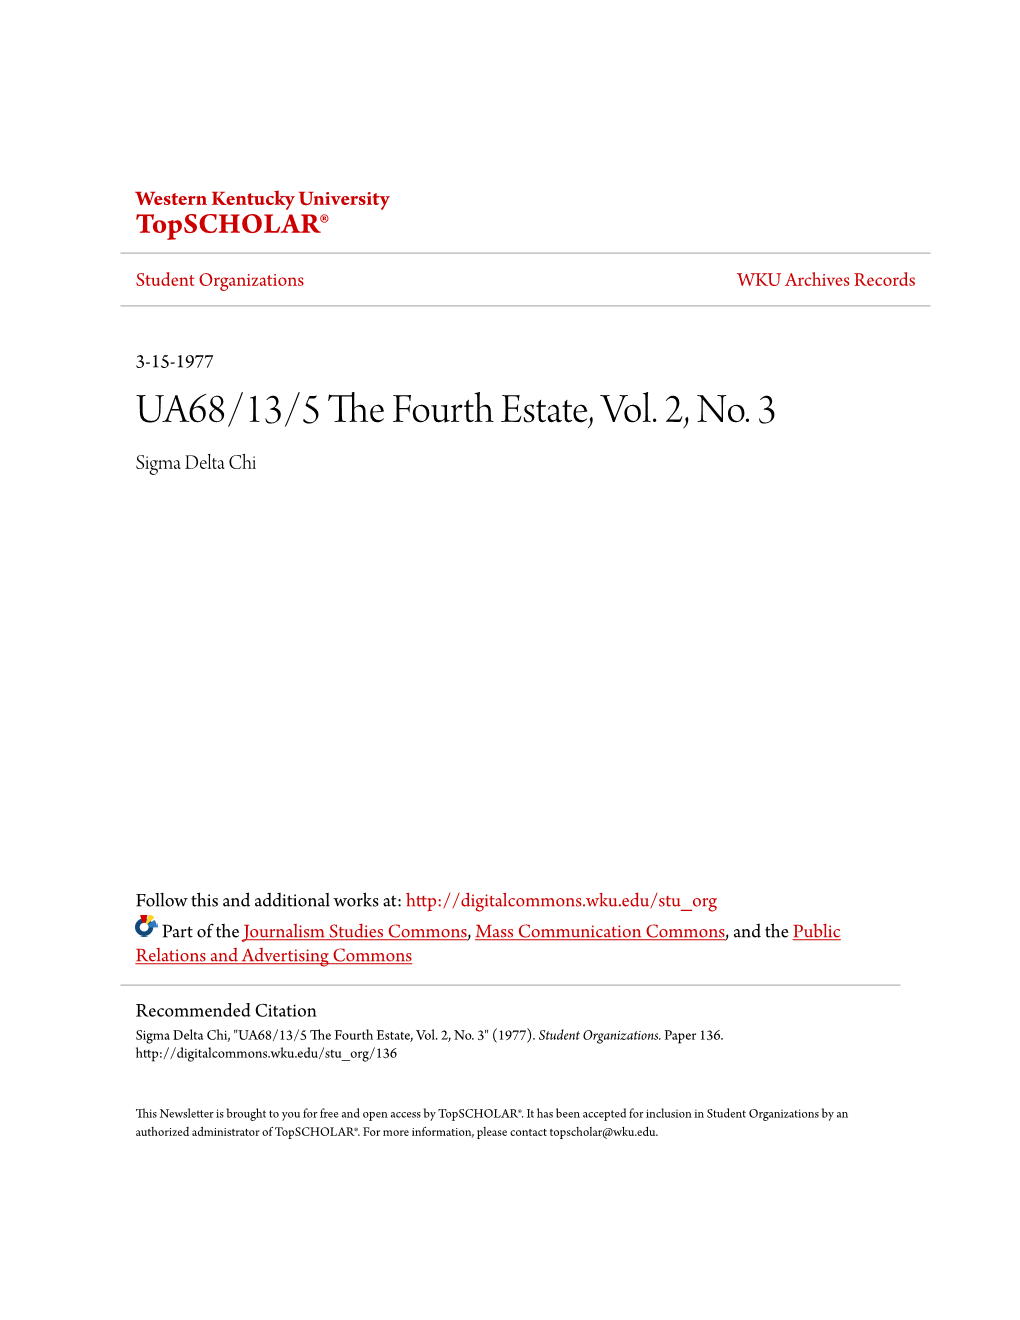 UA68/13/5 the Fourth Estate, Vol. 2, No. 3